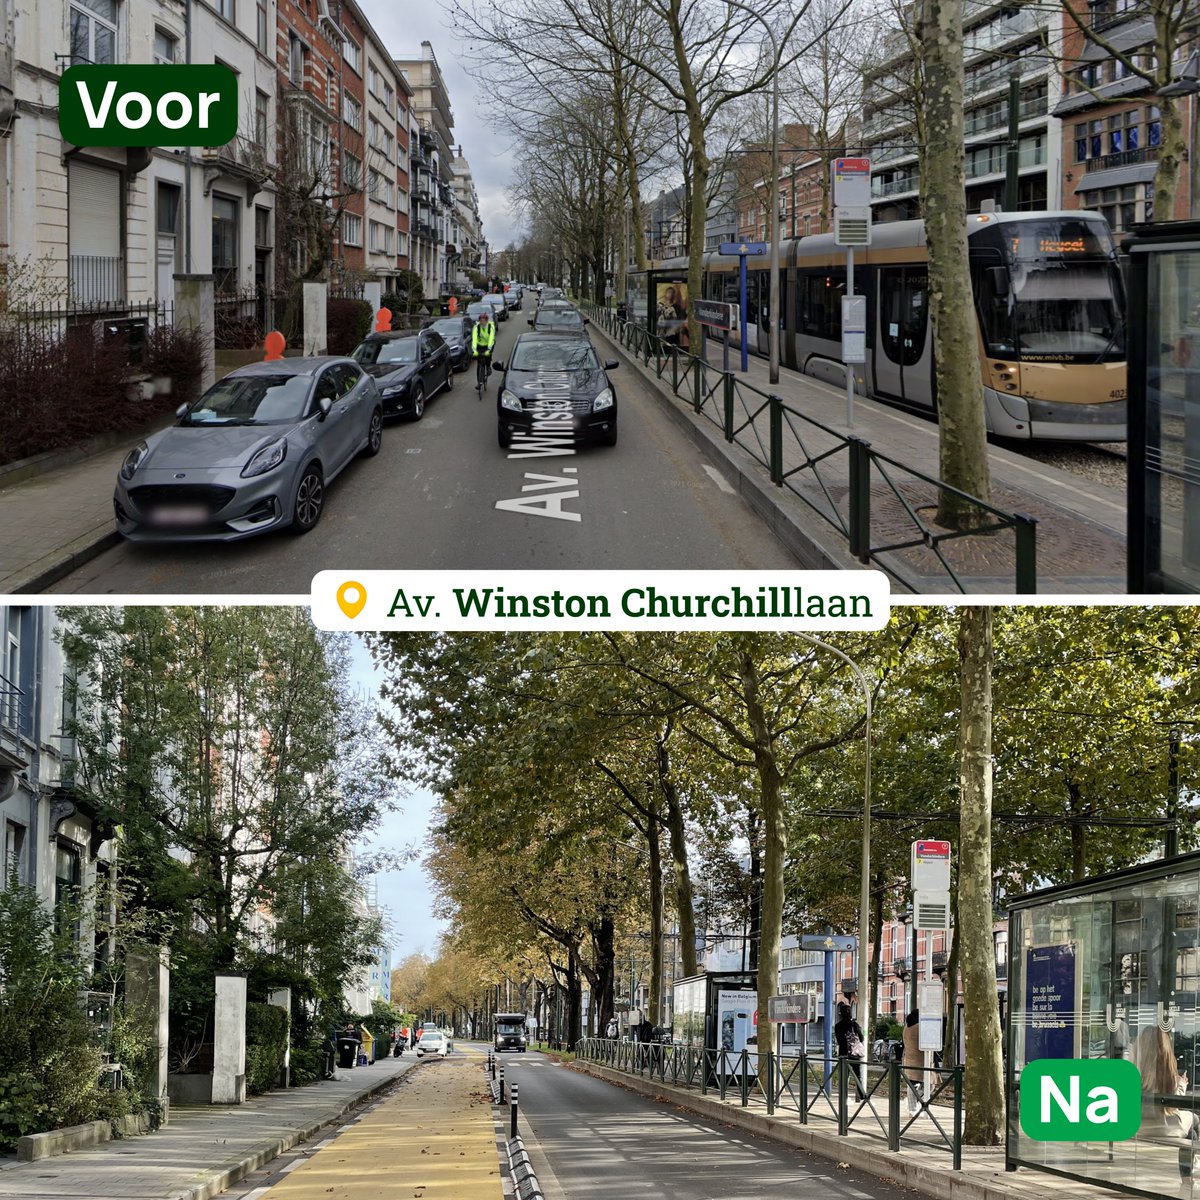 That's five years of change in Brussels. ✅ Let's do five more years. 💚 #BruxellesChange #BrusselBlijvenVeranderen @groenbrussel @ecolobruxelles